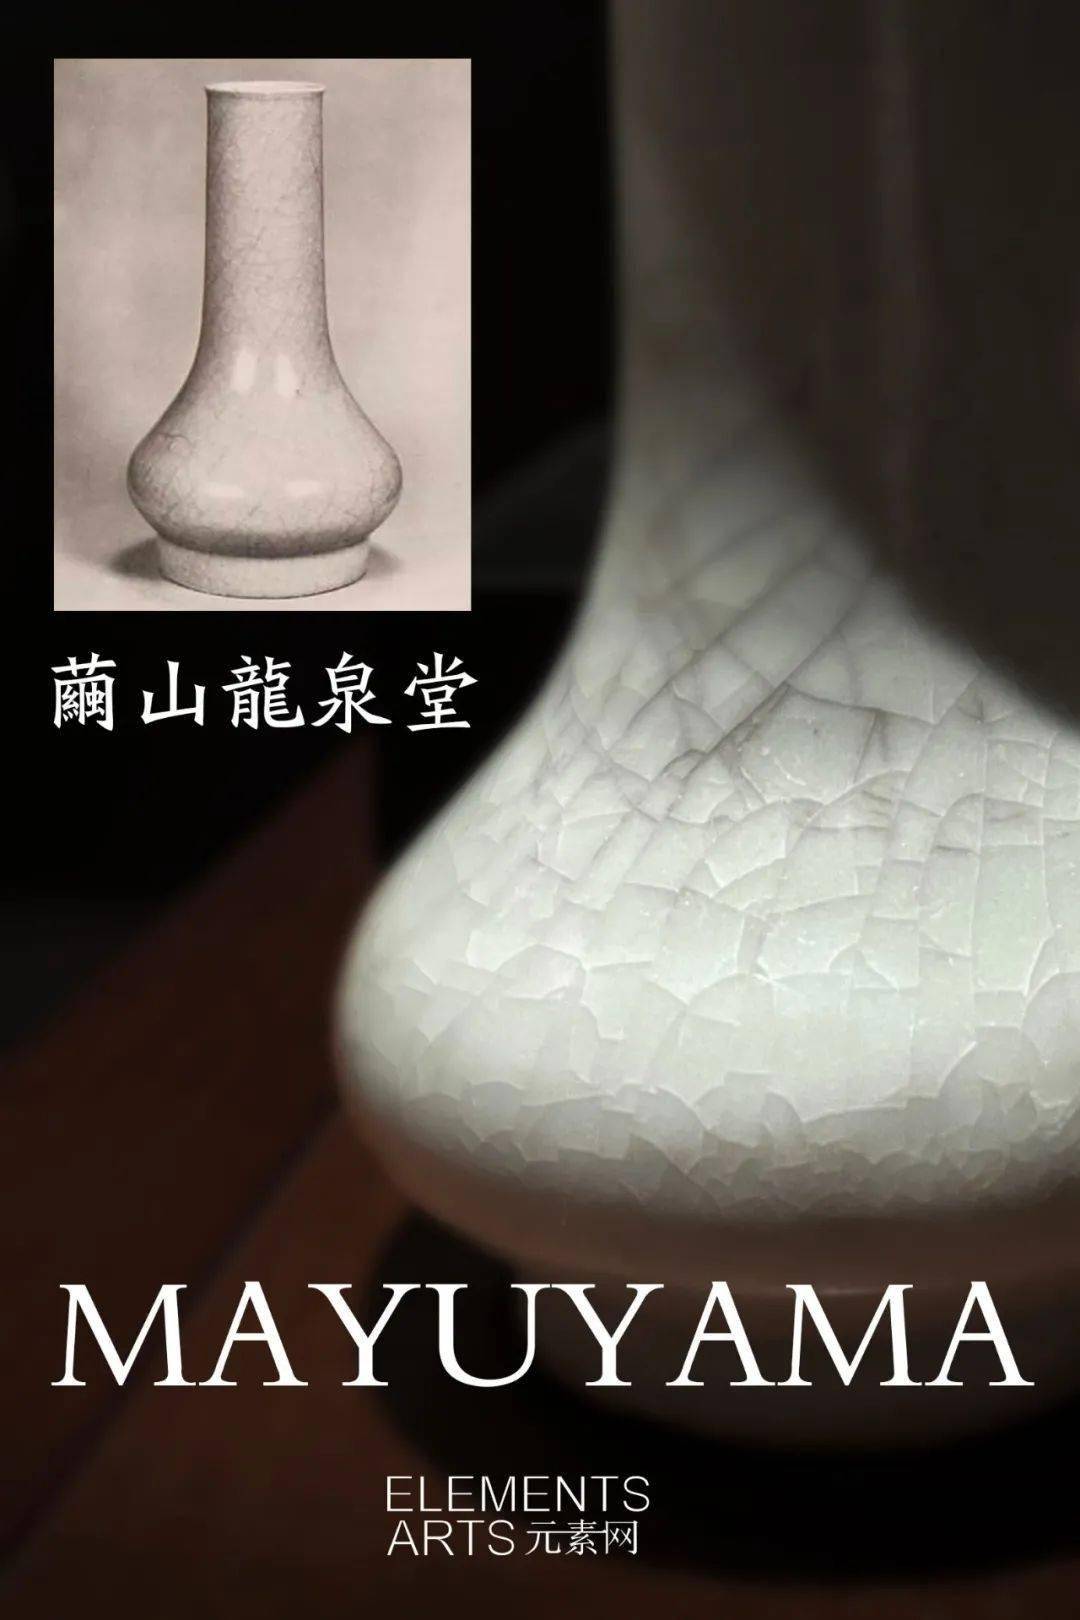 隐身东瀛的瑰宝| Mayuyama Treasures hidden in Japan_手机搜狐网